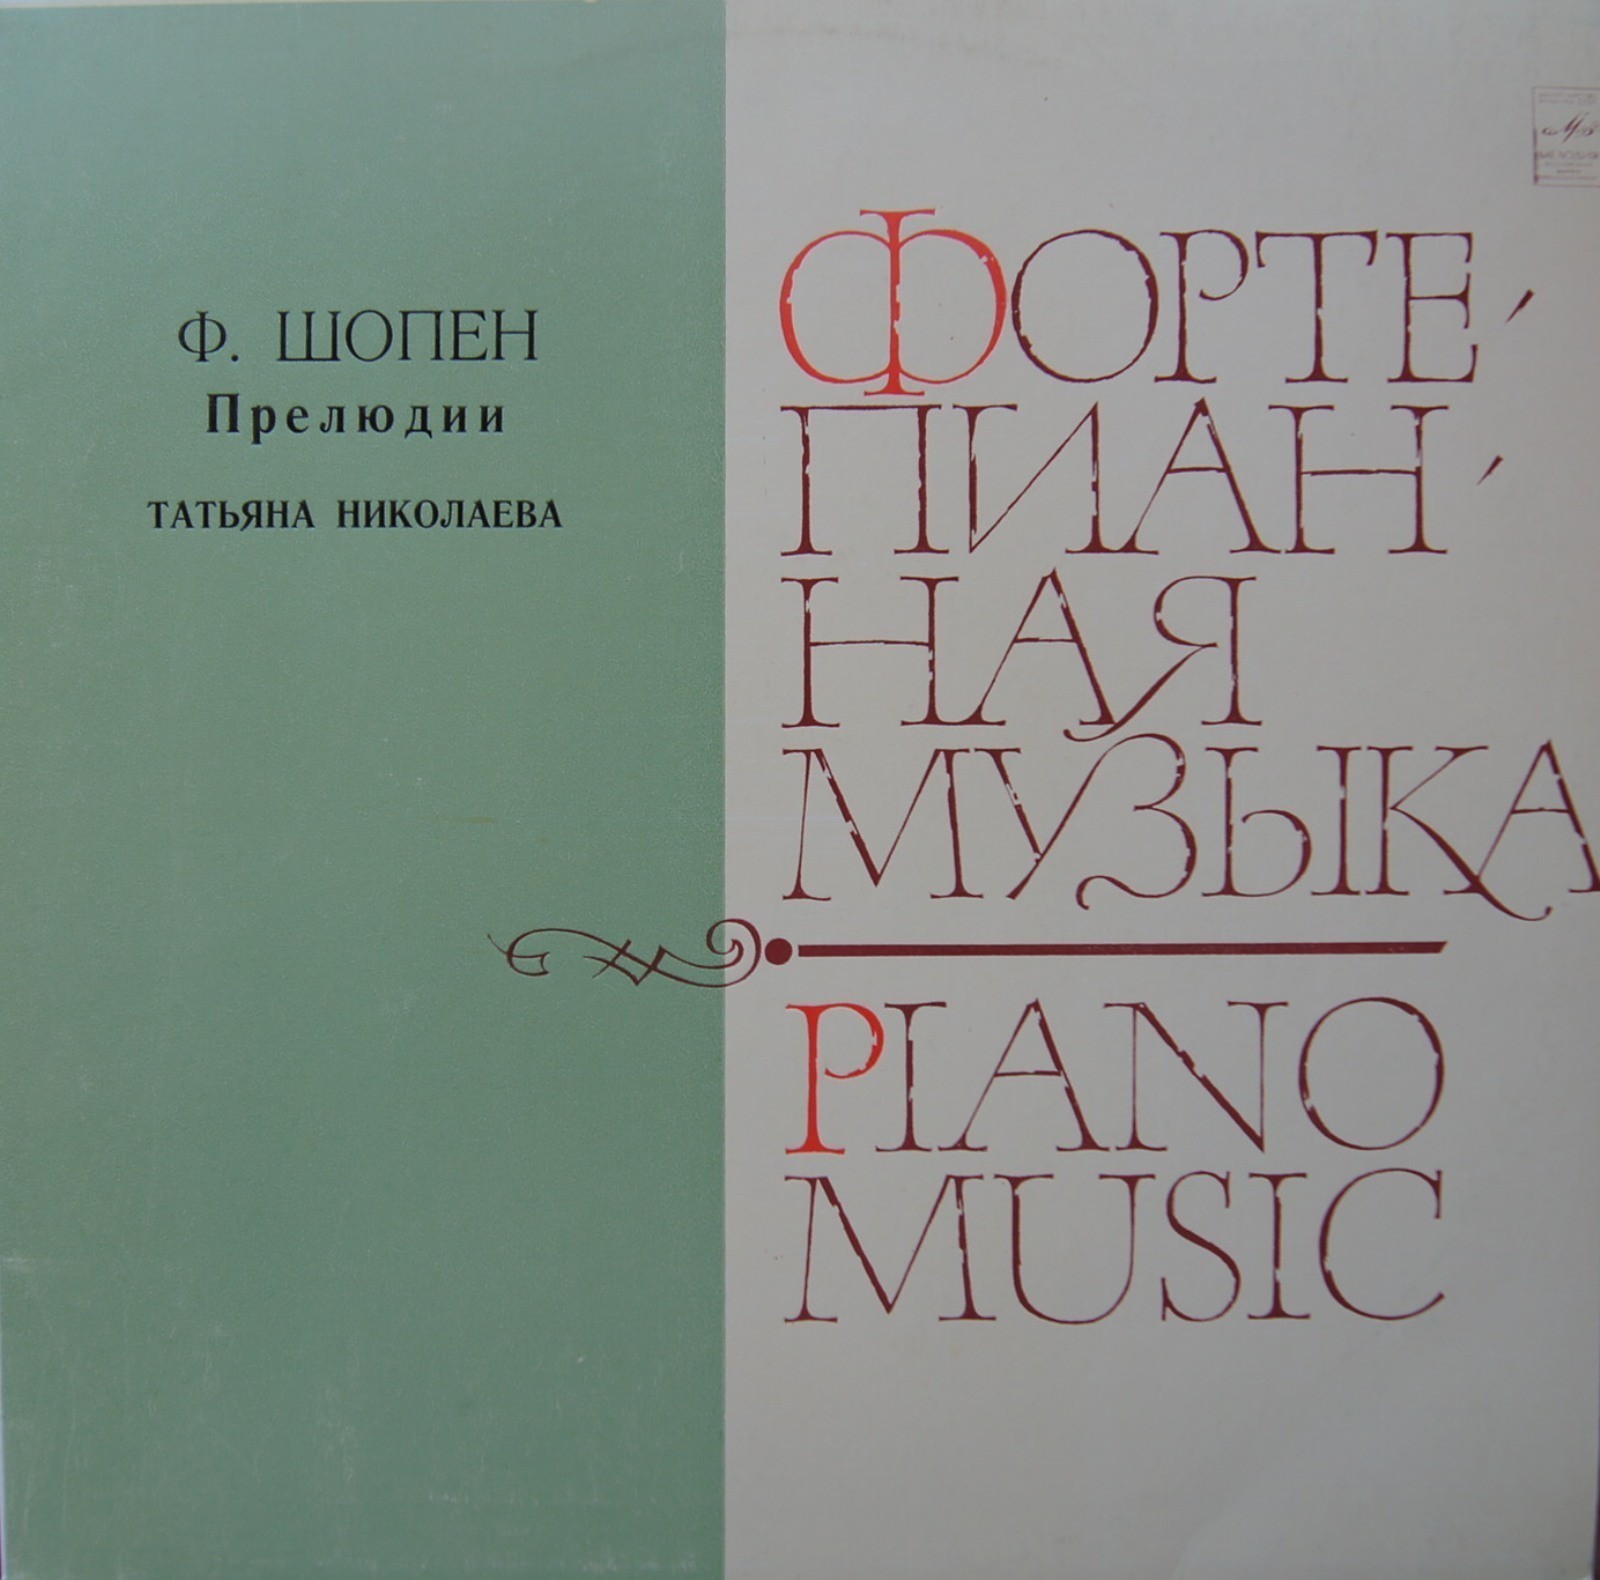 Ф. ШОПЕН (1810-1849) Двадцать четыре прелюдии для ф-но, соч. 28 (Т. Николаева)